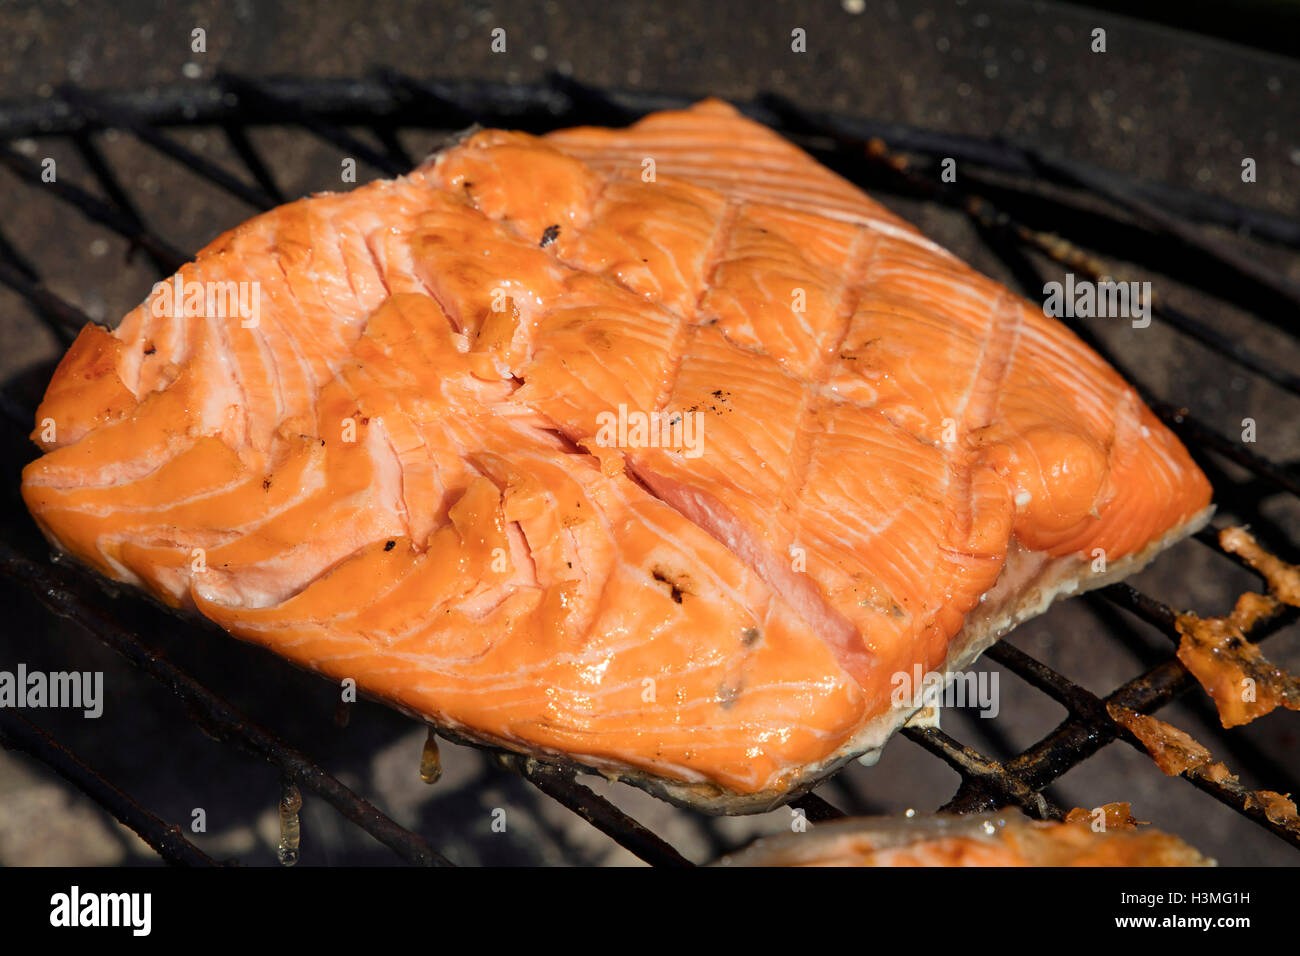 Un salmone alla griglia filetto di pesce barbecue preparato di cottura sulla griglia per il barbecue, close up Foto Stock